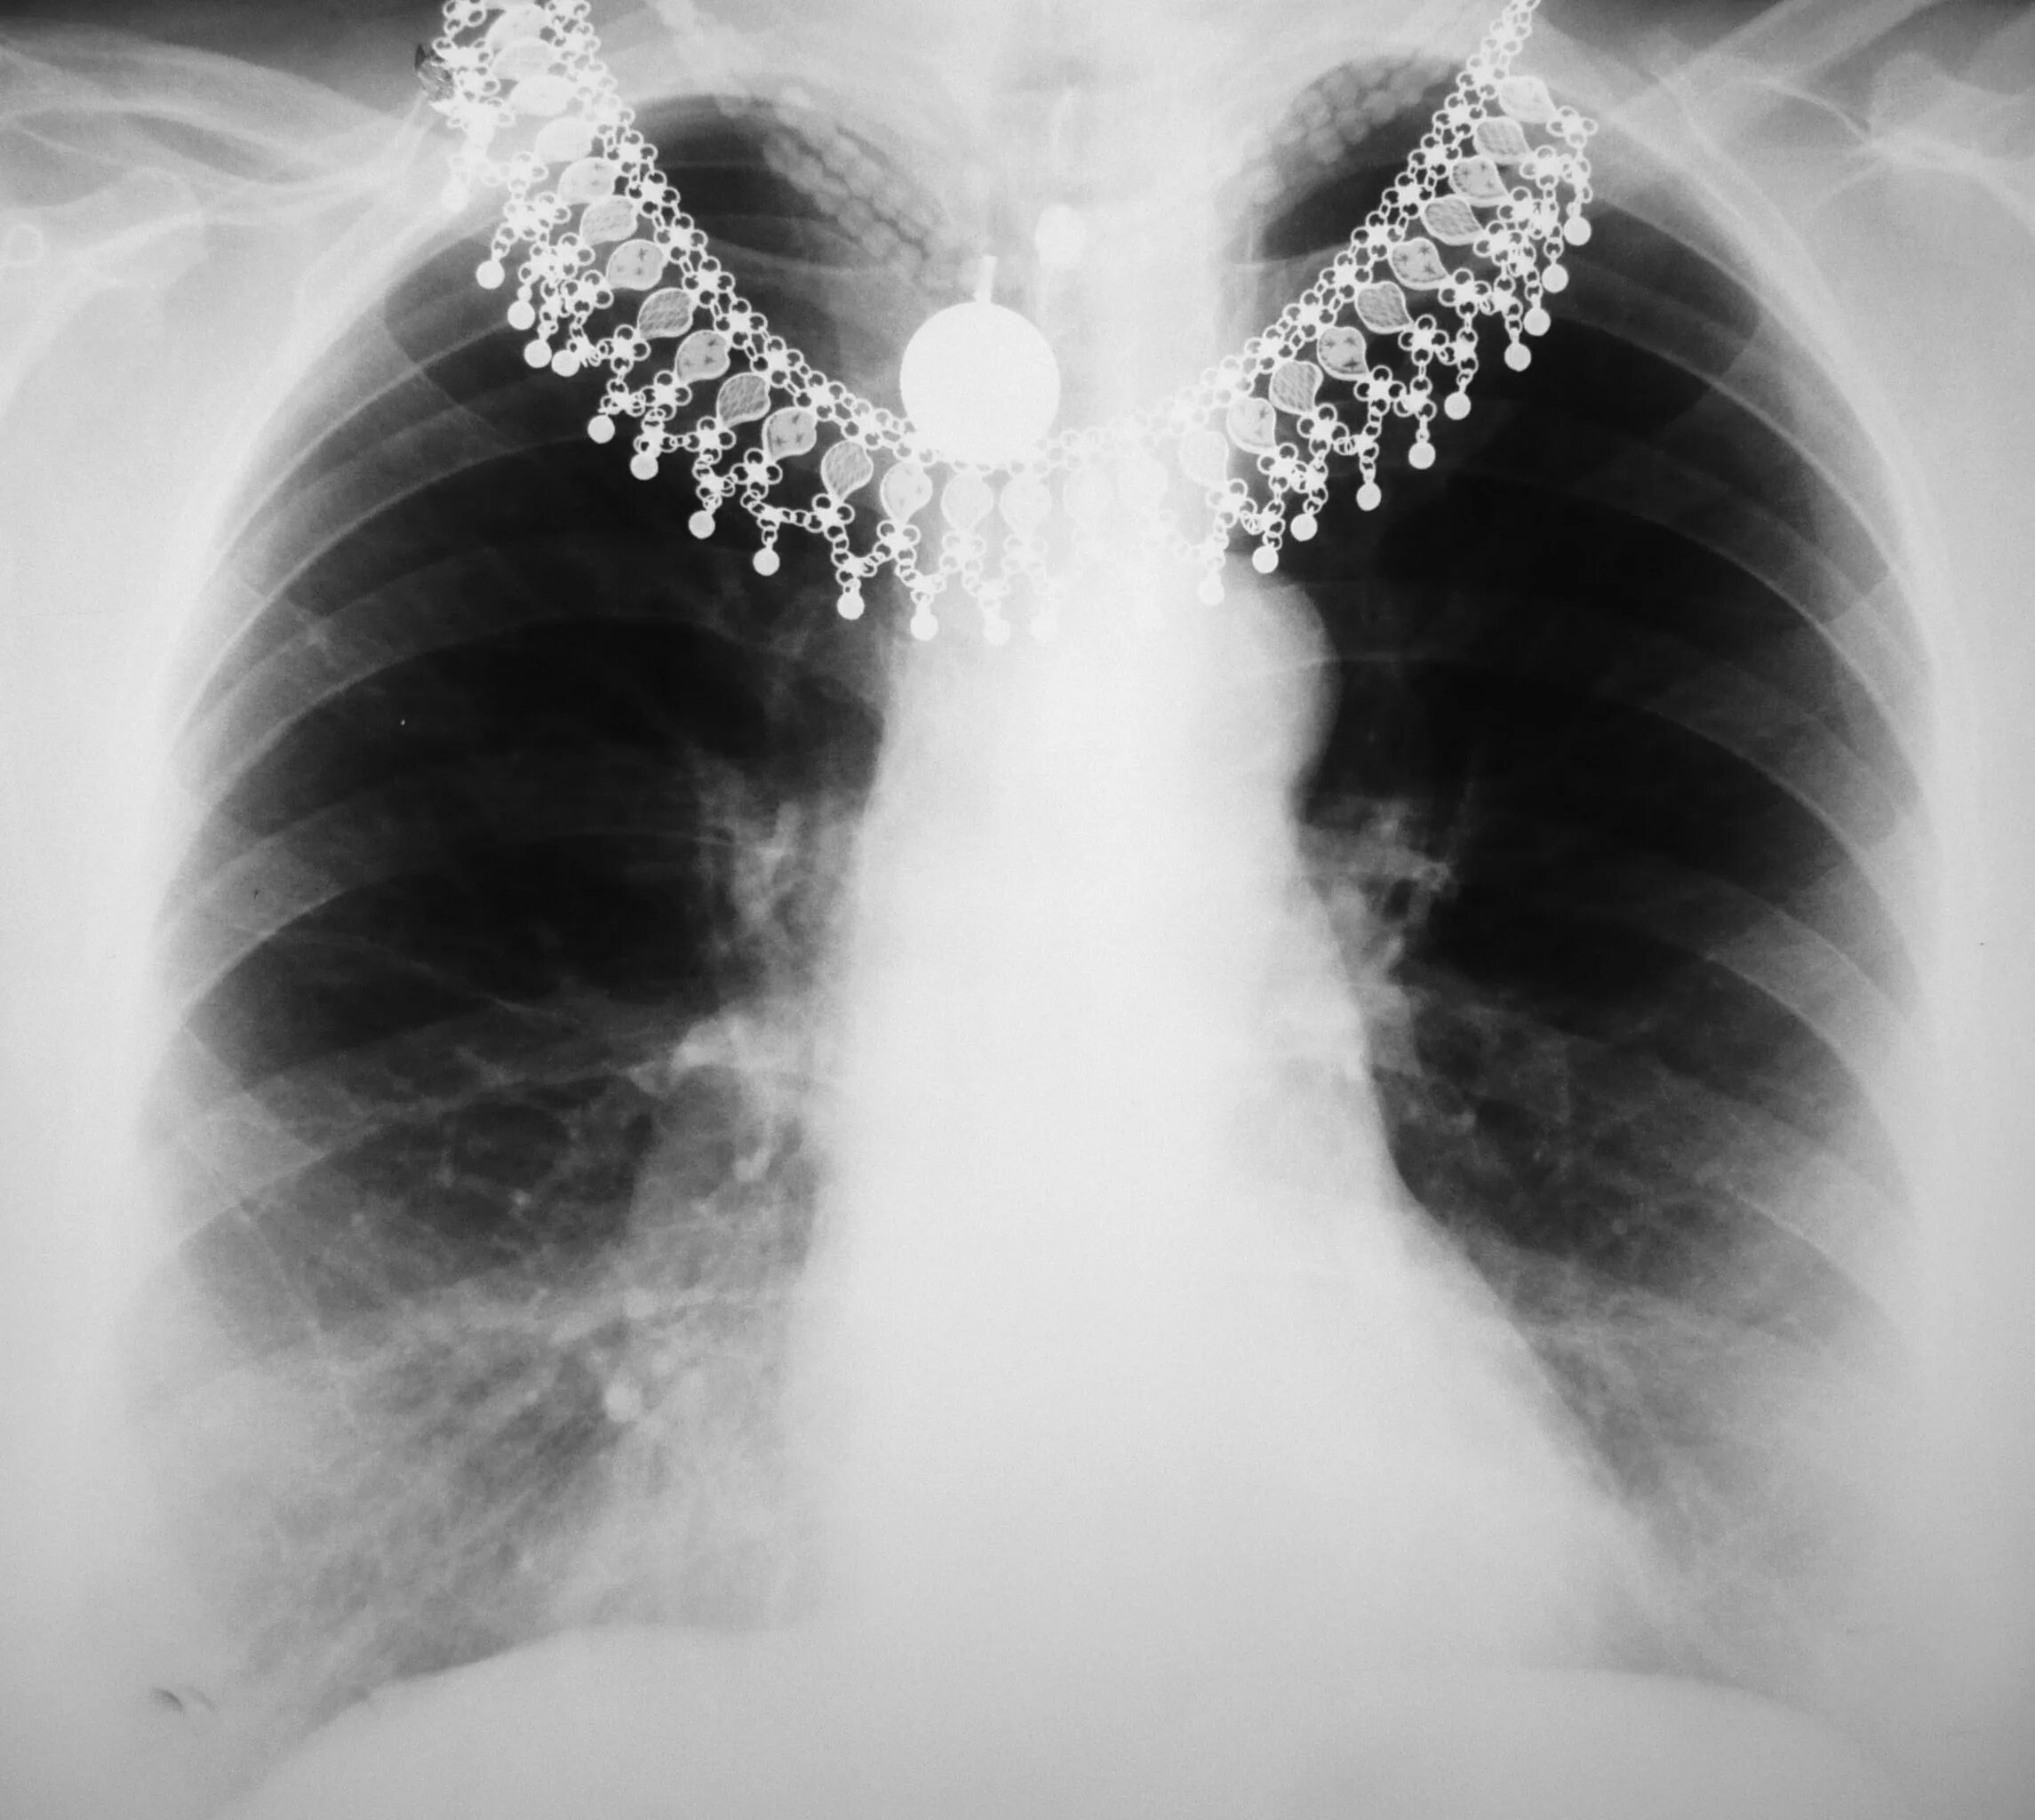 Рентген снимок грудины. Рентгенограмма грудины. Радиография грудной клетки. Рентген снимки грудной клетки.